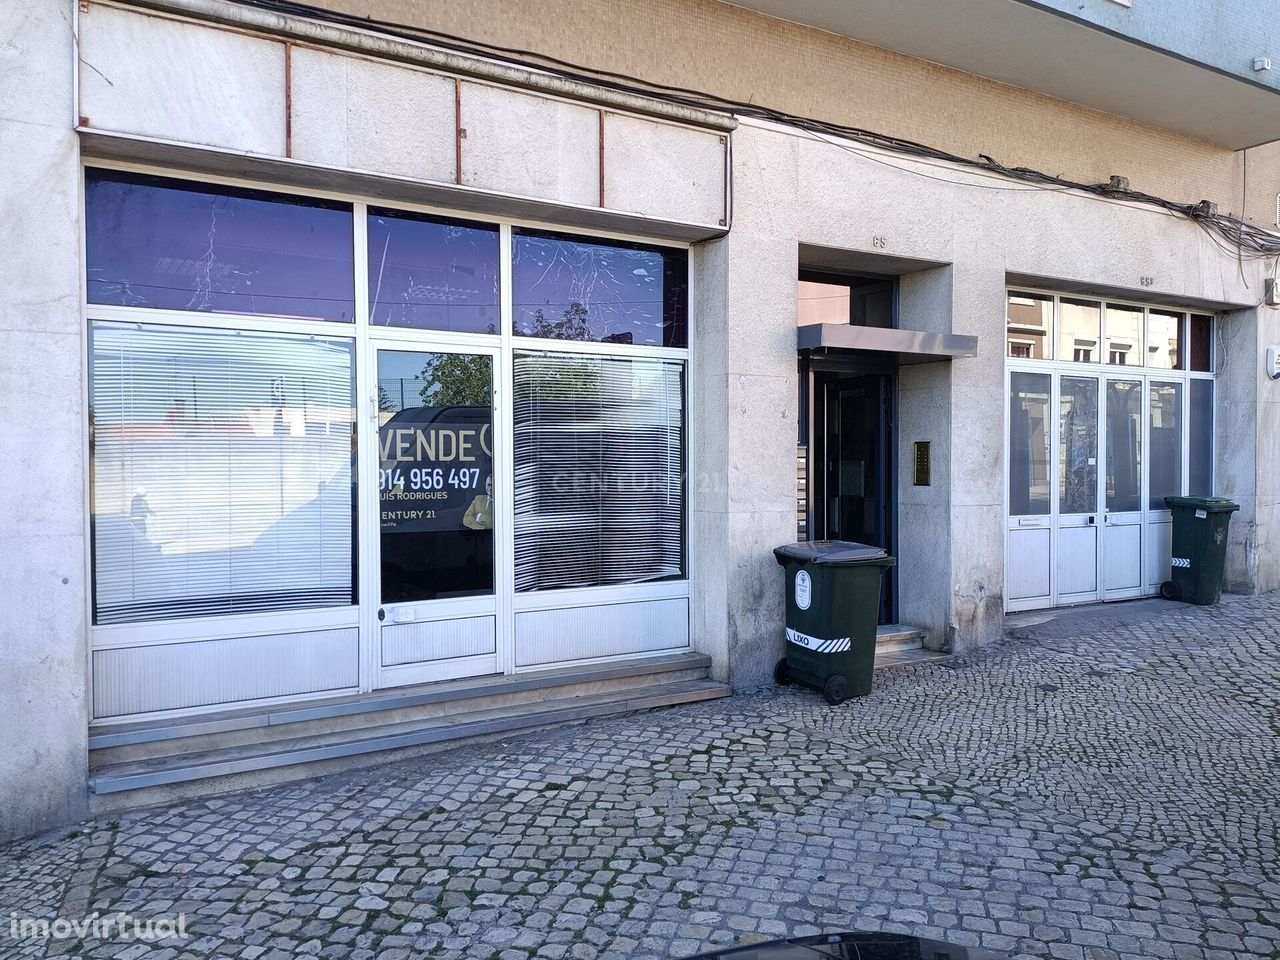 Loja para Comércio em Lisboa, na Avenida Afonso III. Penha de França.